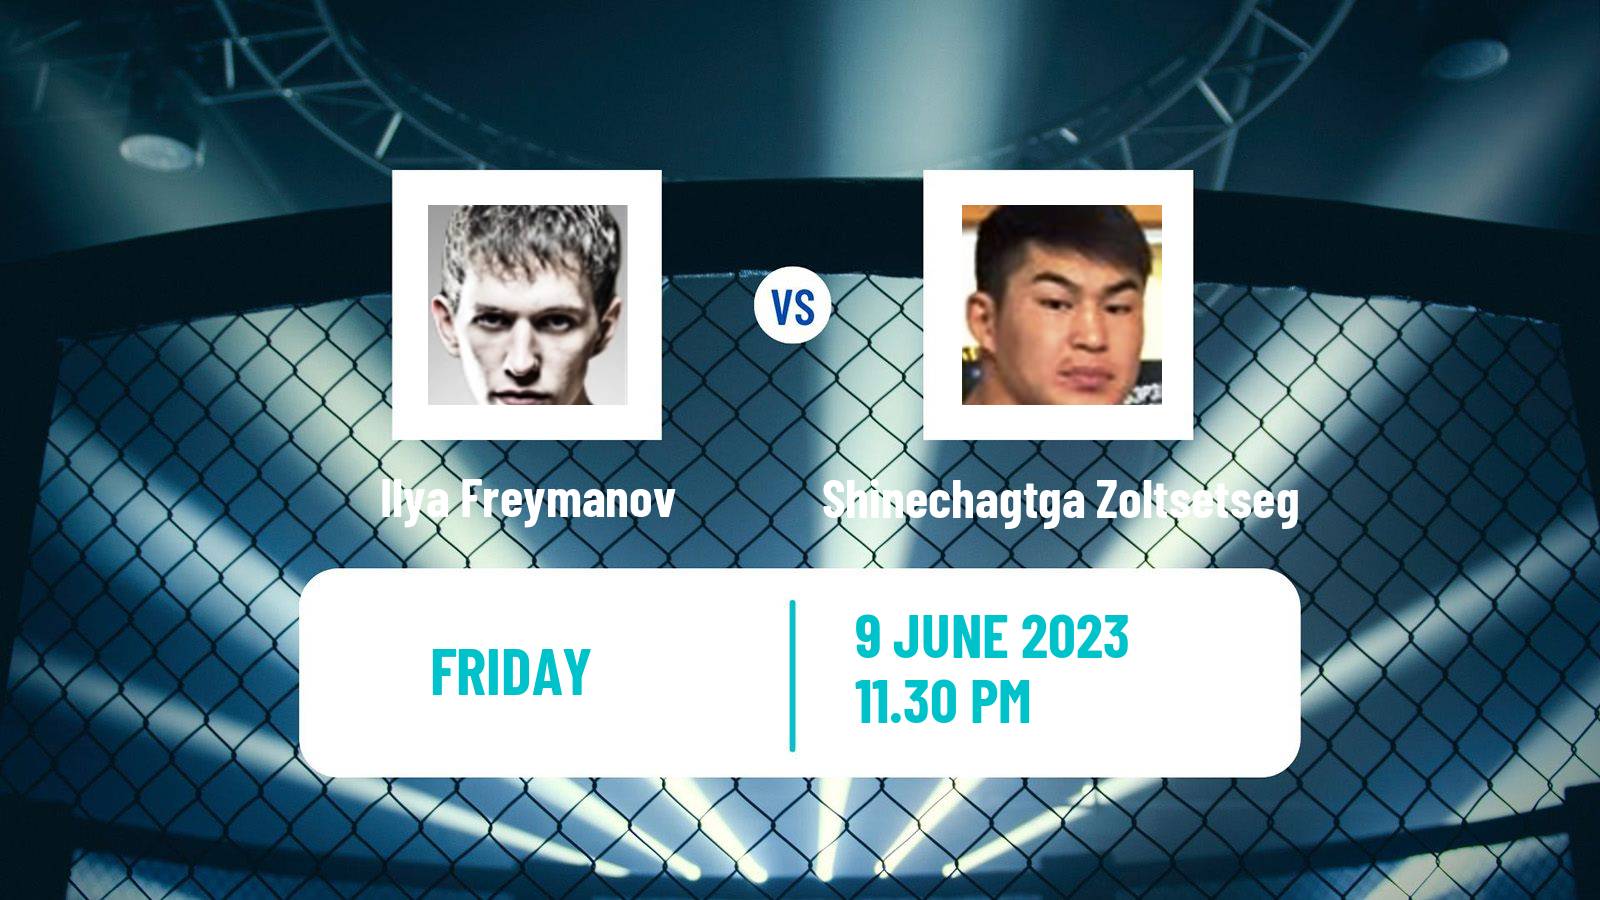 MMA Featherweight One Championship Men Ilya Freymanov - Shinechagtga Zoltsetseg